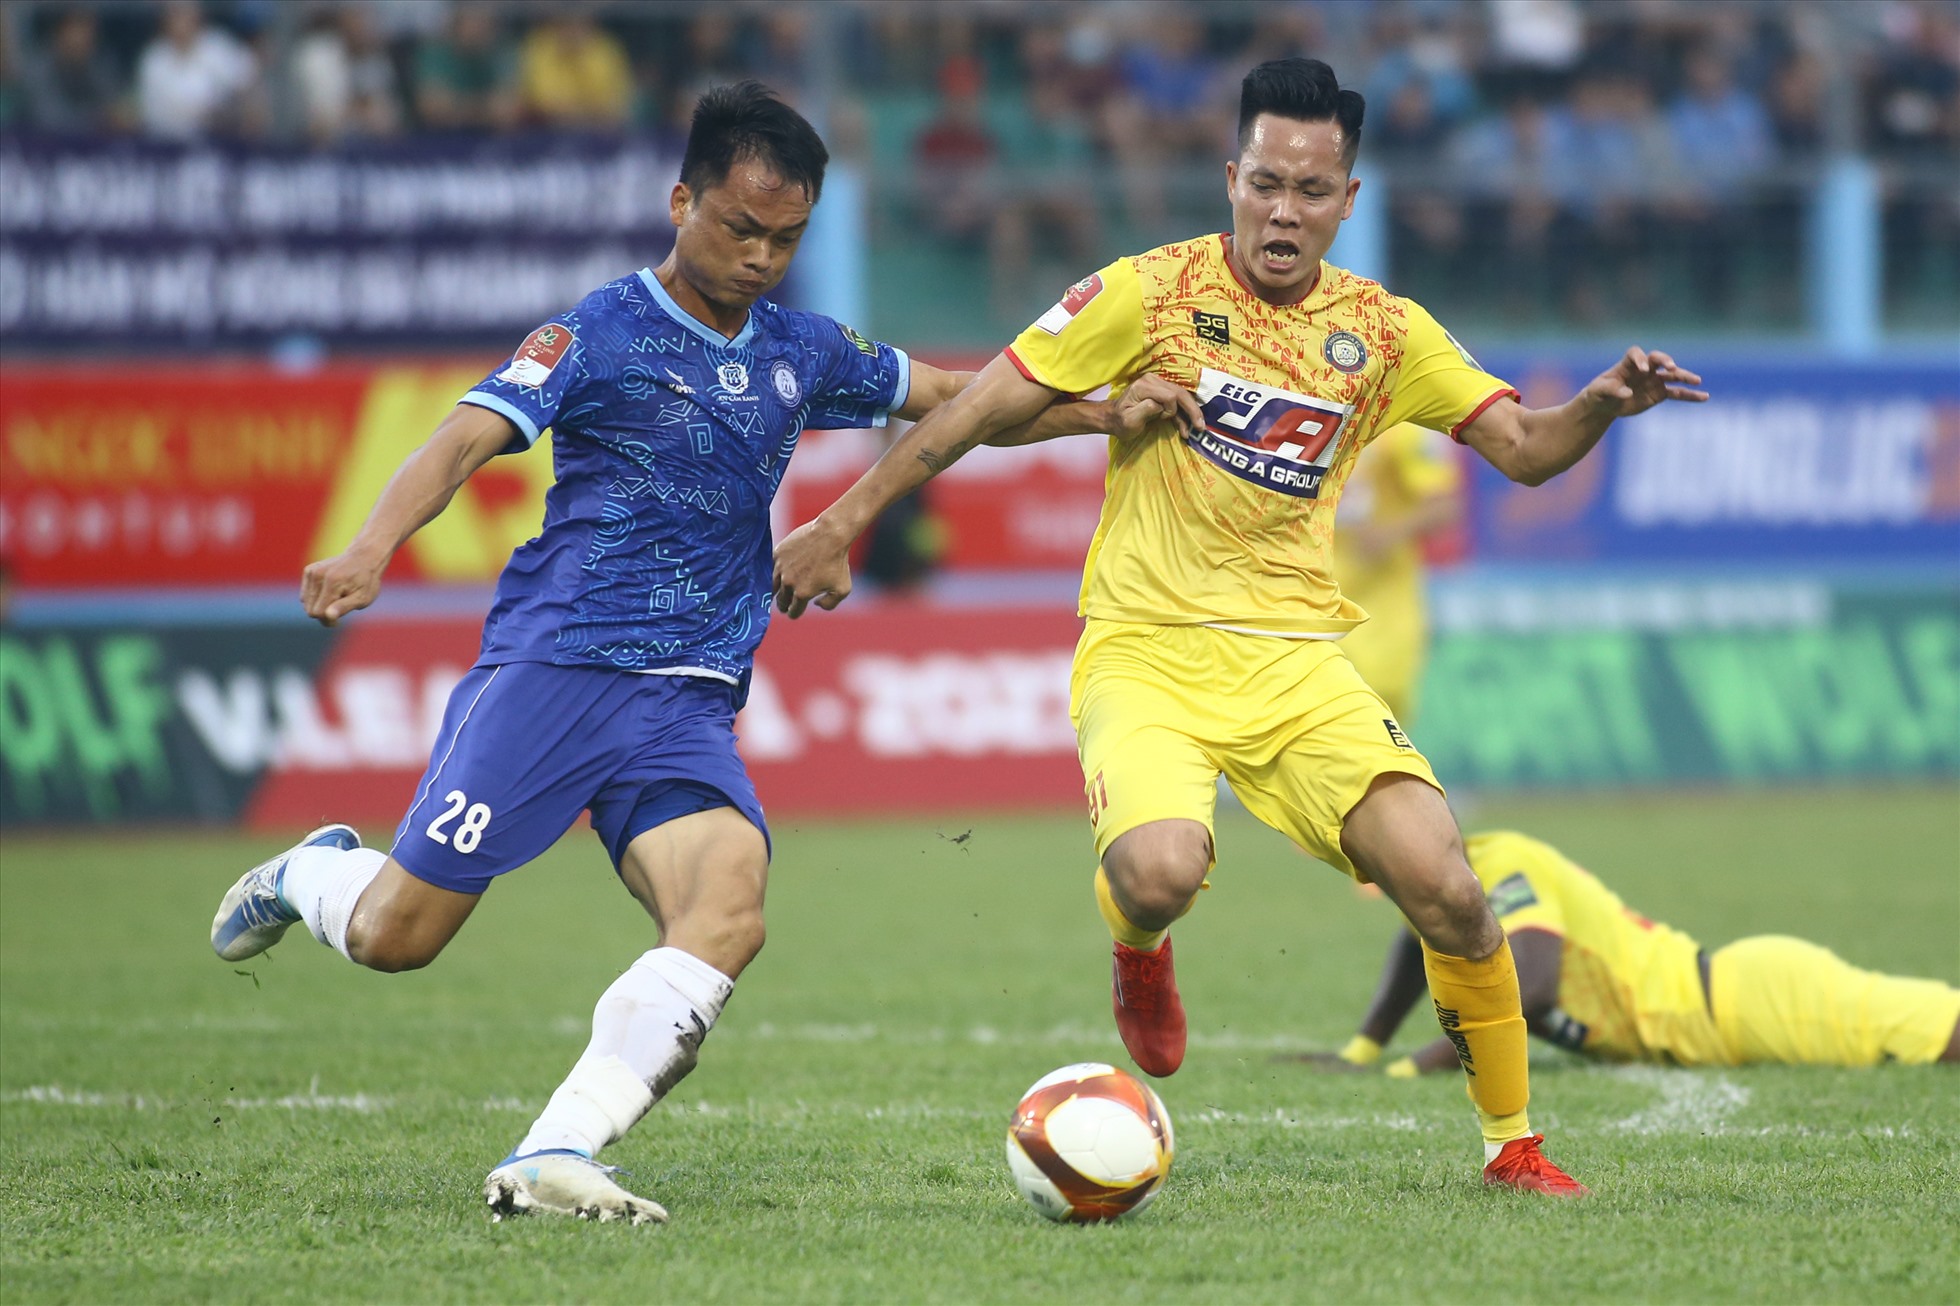 Cầu thủ cũ của Khánh Hòa - Thanh Bình thể hiện quyết tâm trong lần trở lại sân 19 tháng 8.